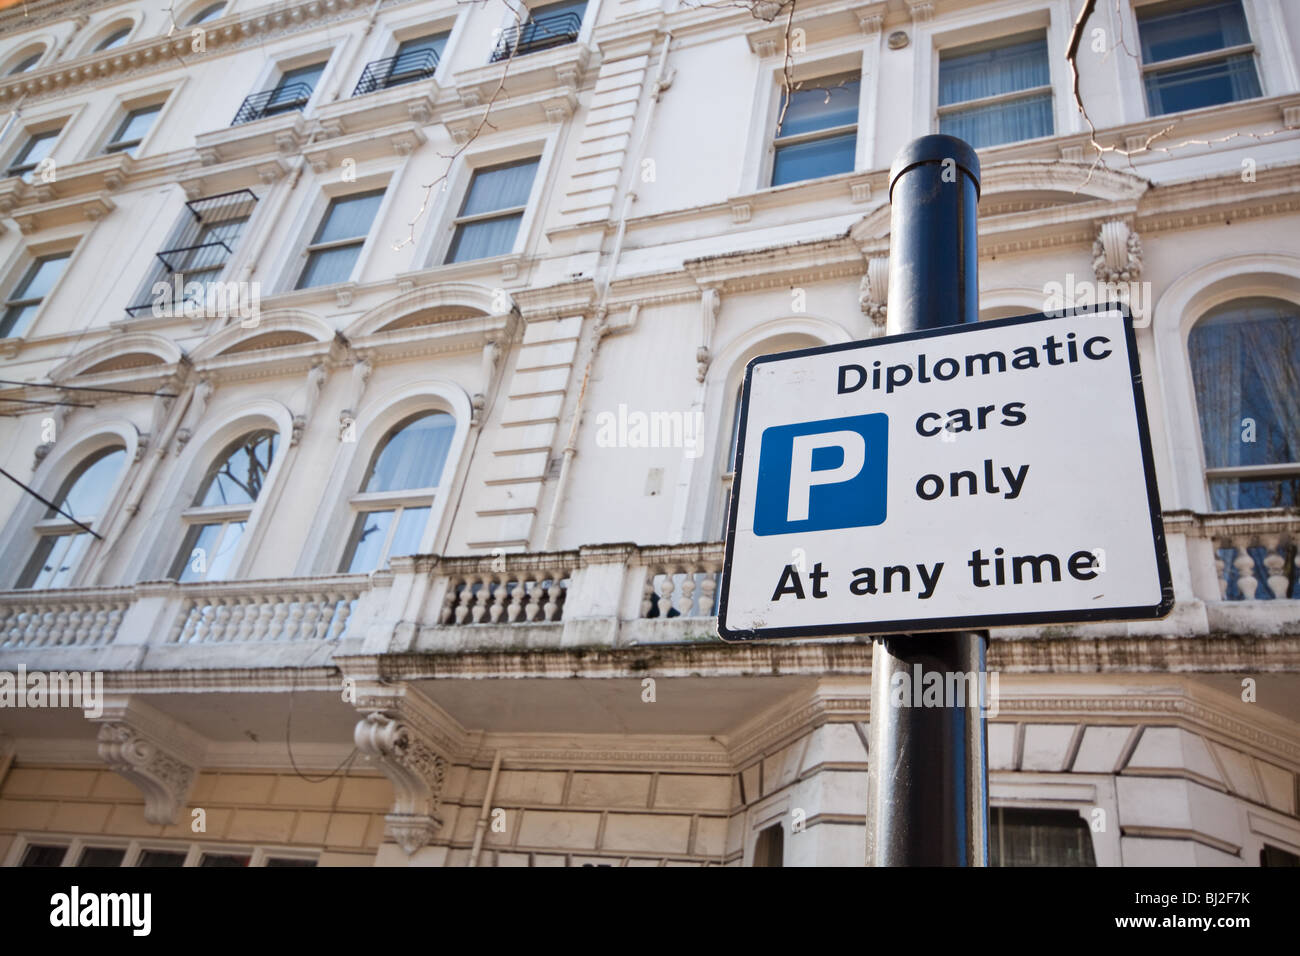 Aparcamiento para los diplomáticos en Londres Kensington Foto de stock